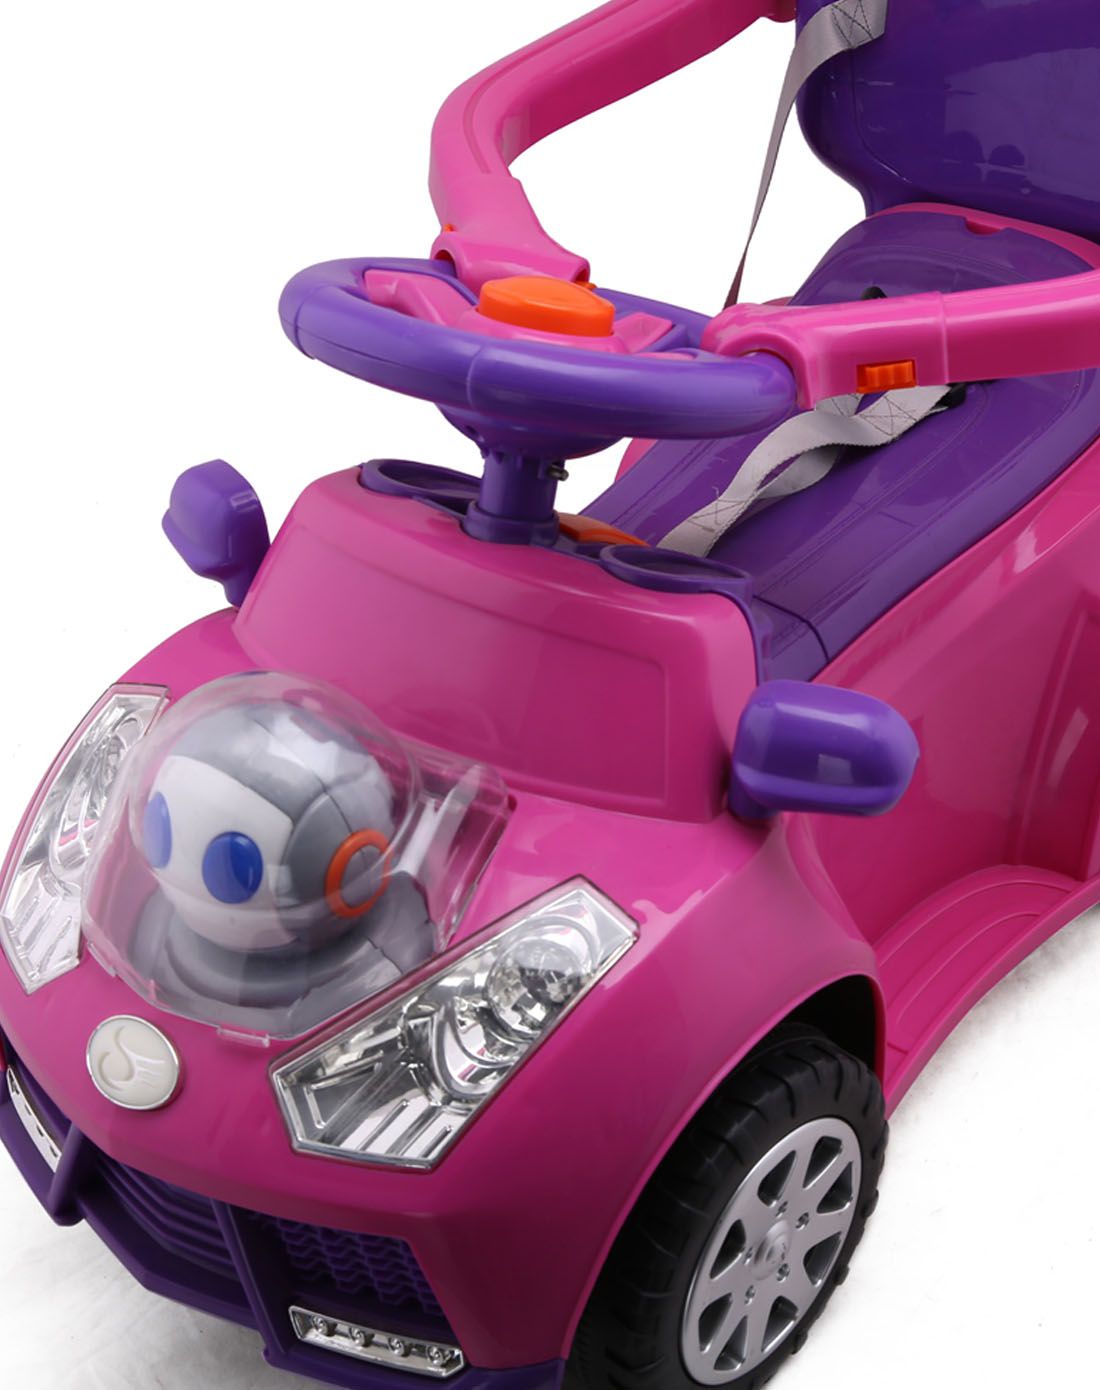 0-3岁宝宝成长玩具专场仿真机器人助步车粉色